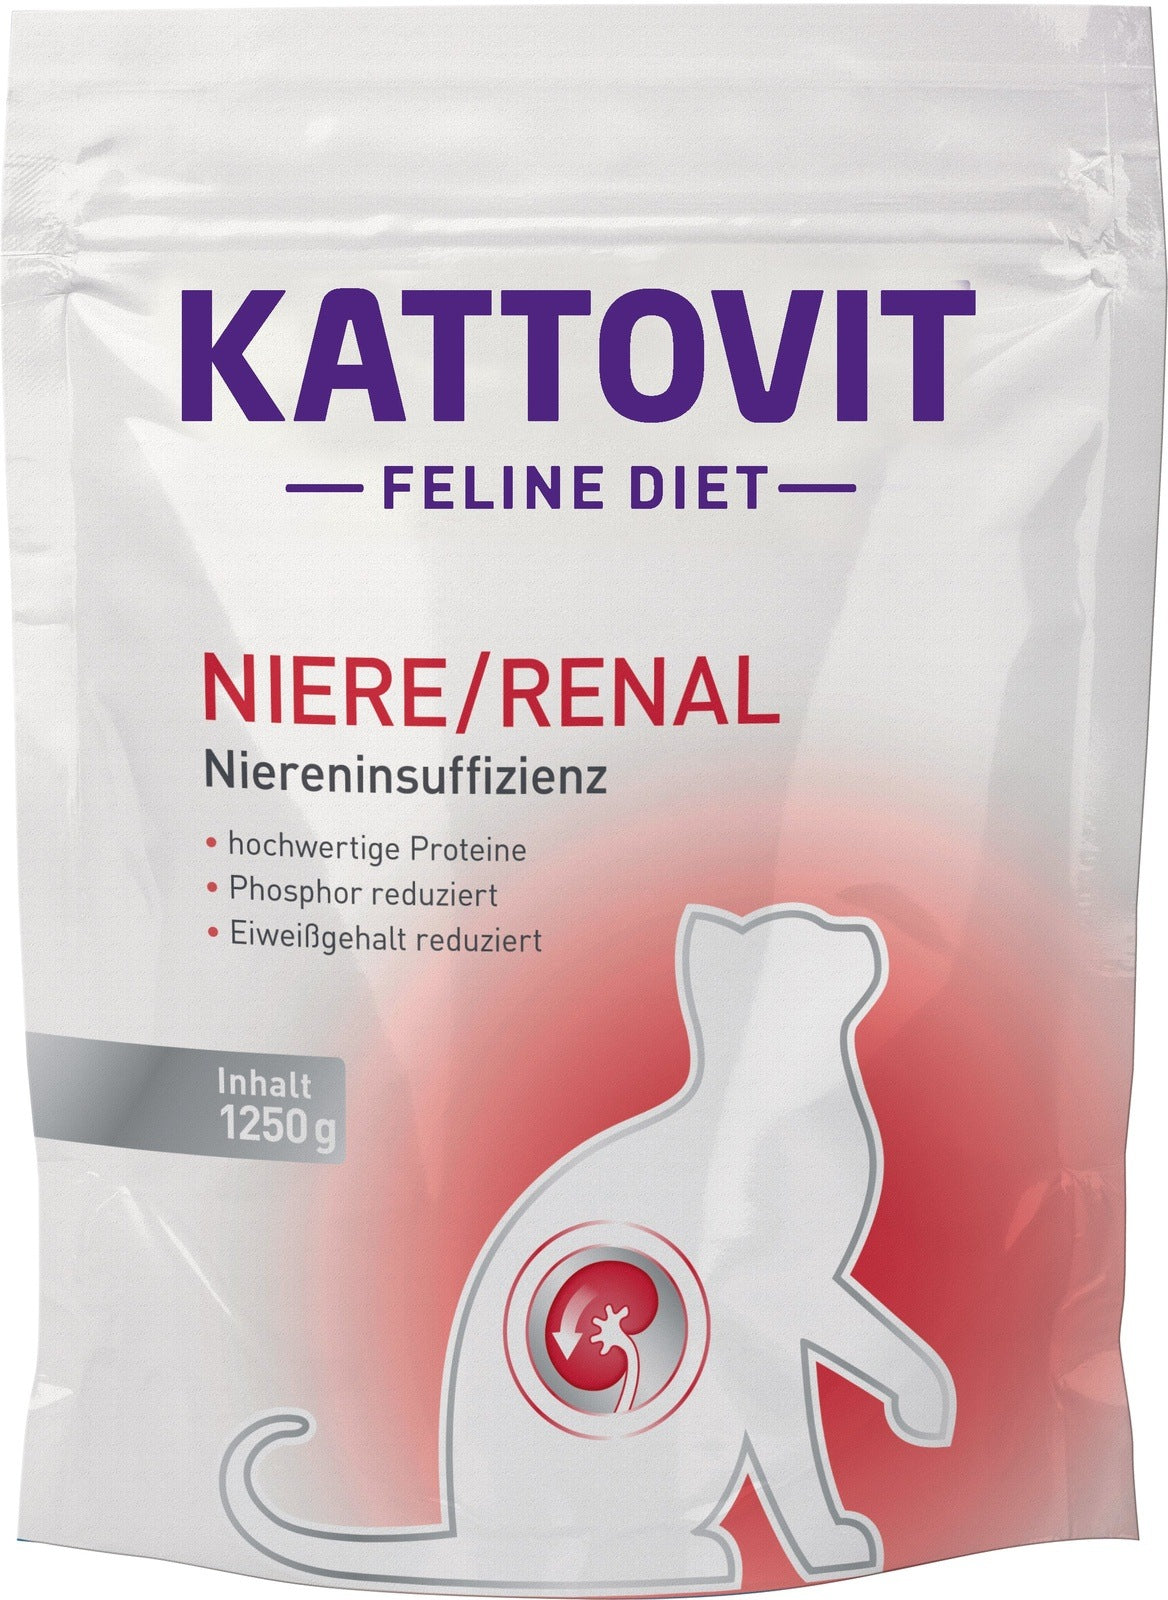 Artikel mit dem Namen Kattovit Feline Diet Niere/Renal Trockenfutter im Shop von zoo.de , dem Onlineshop für nachhaltiges Hundefutter und Katzenfutter.